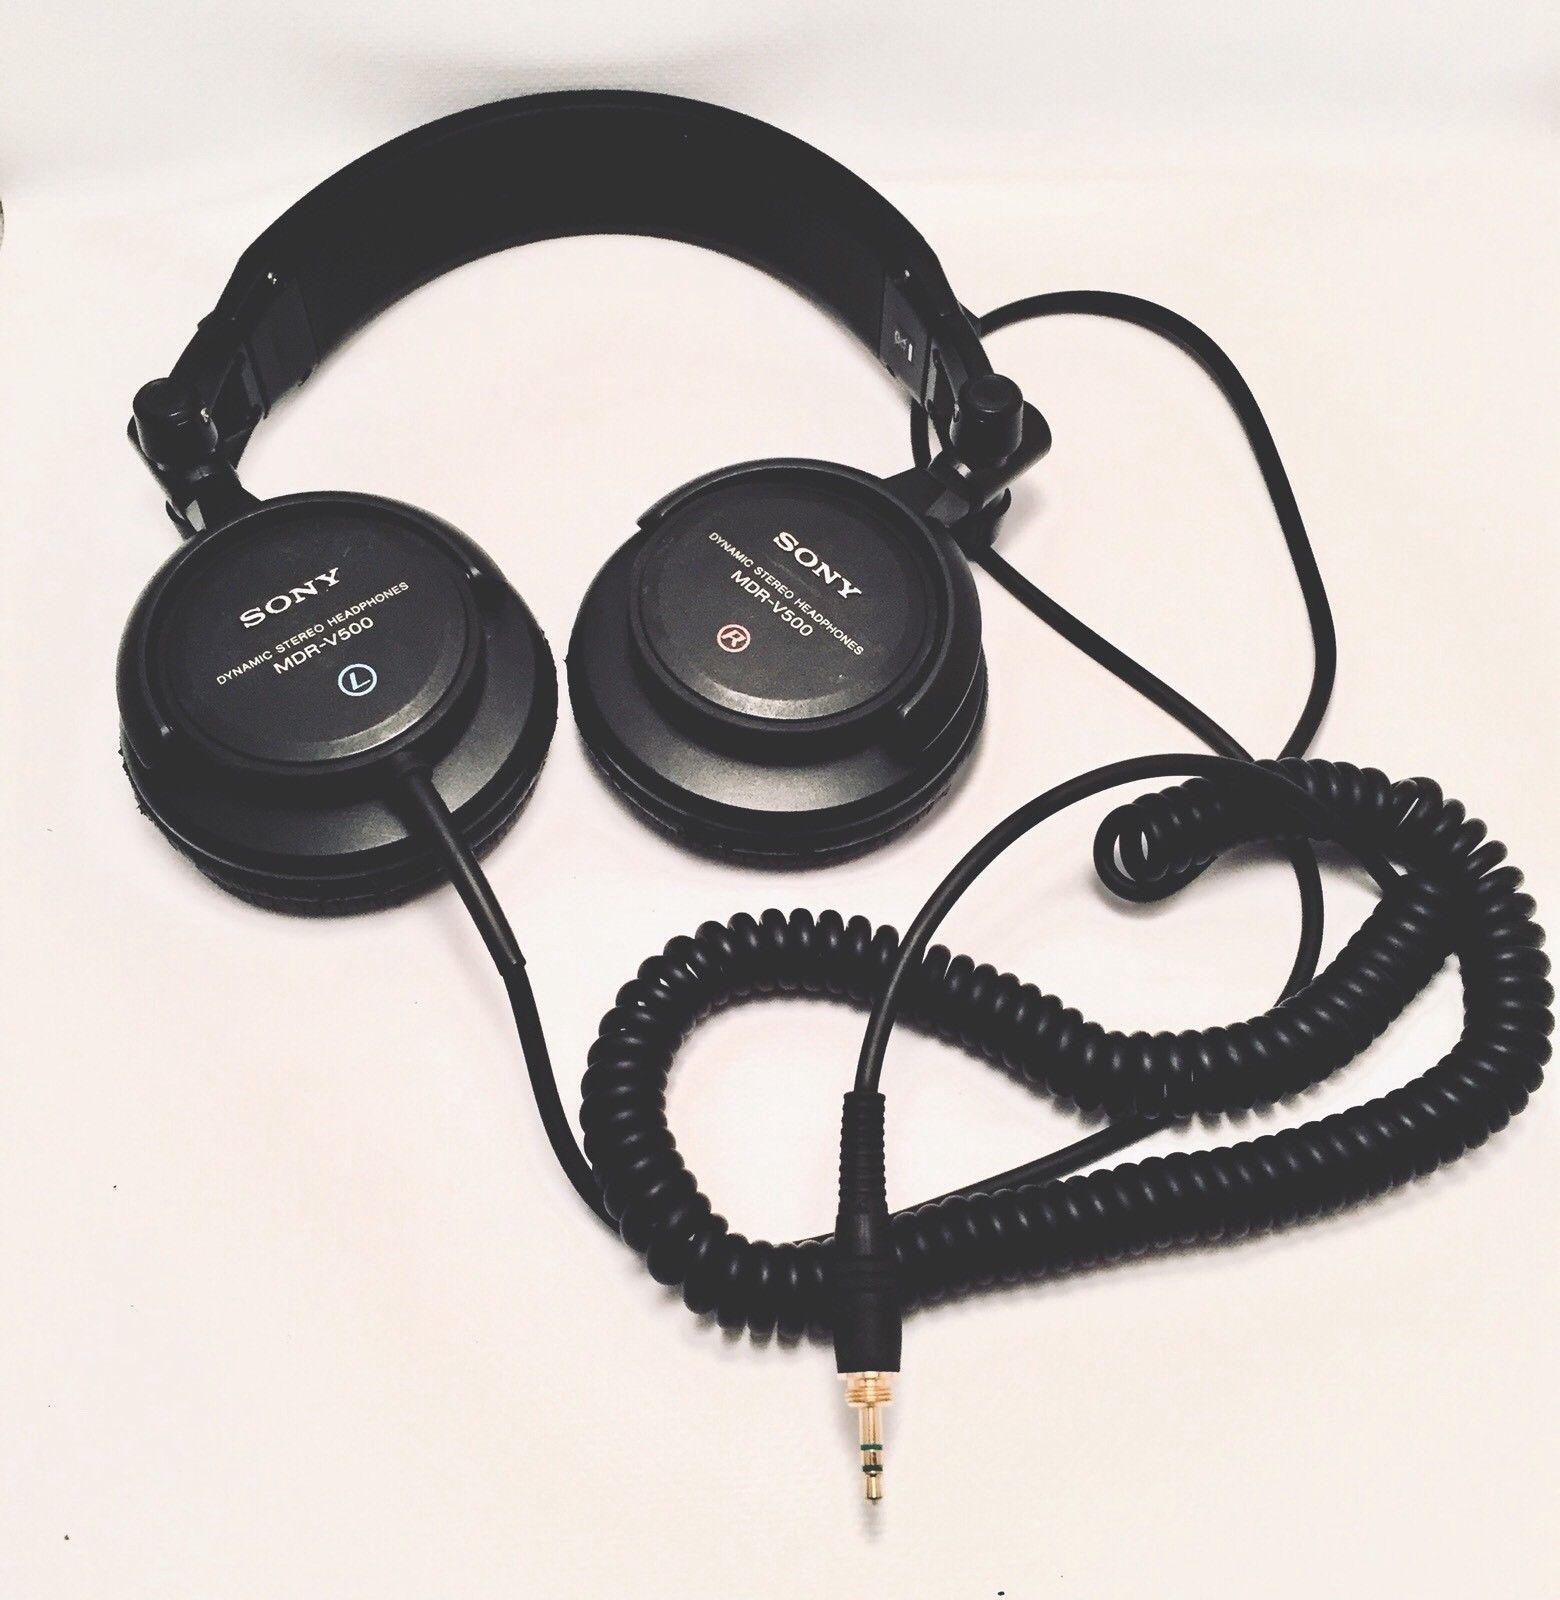 sony mdr-z500dj stereo headphone